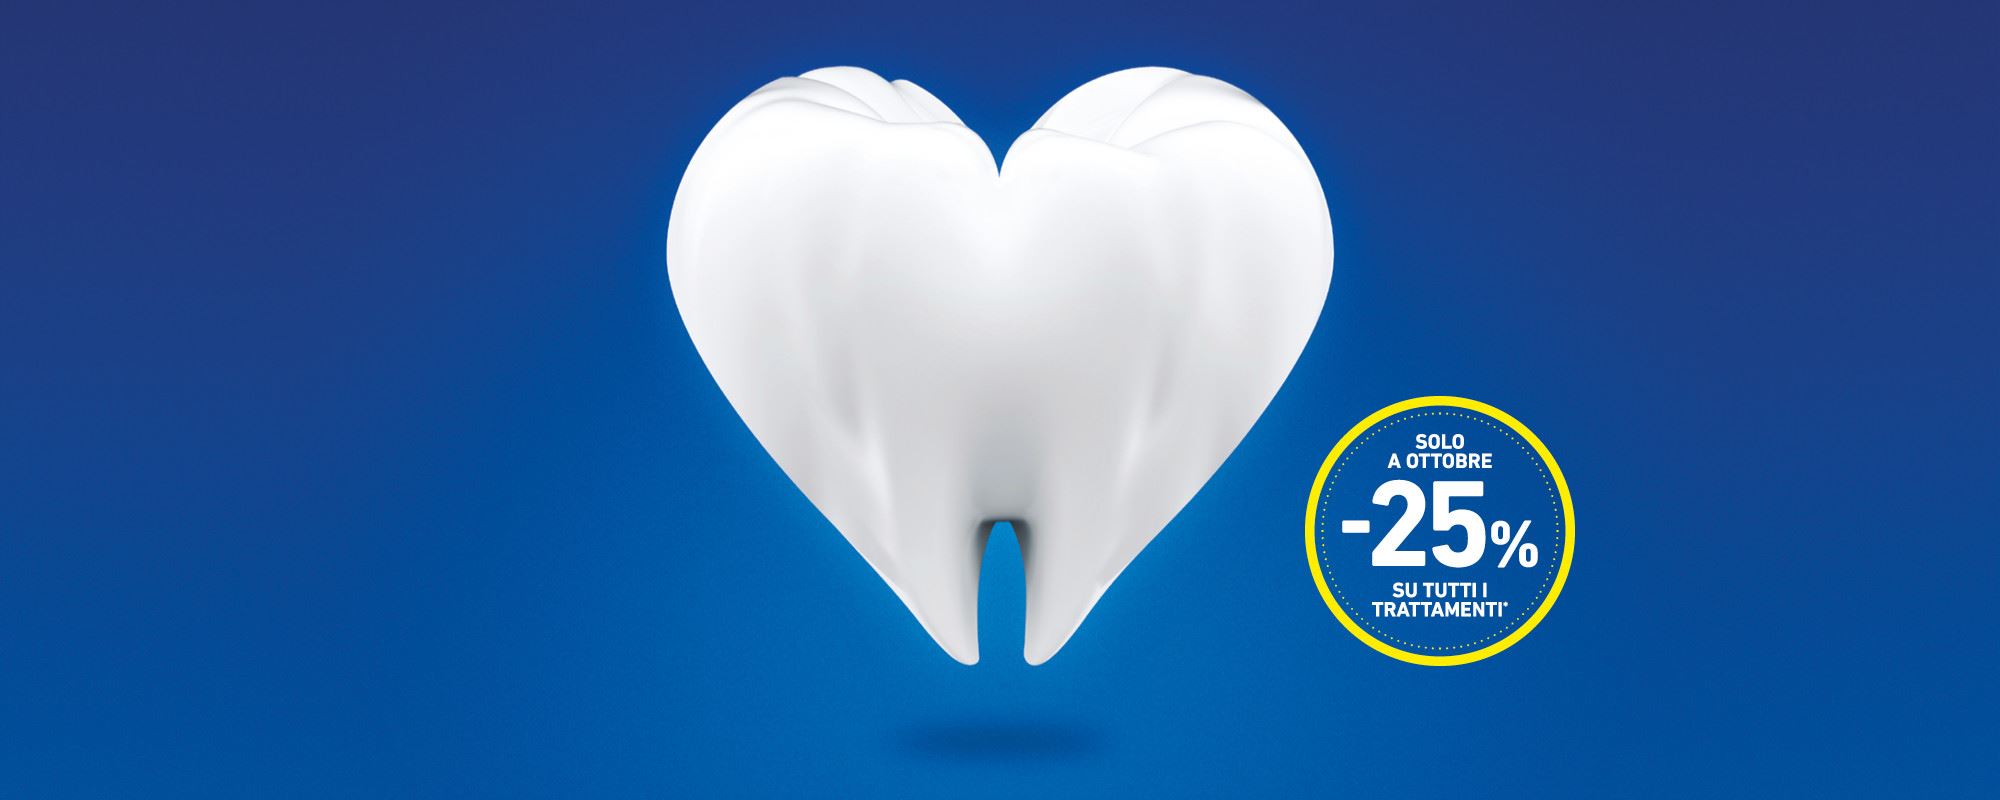 25% di sconto su tutti i trattamenti: a ottobre prenditi cura della bocca nello studio BlueSmile di Bollate!